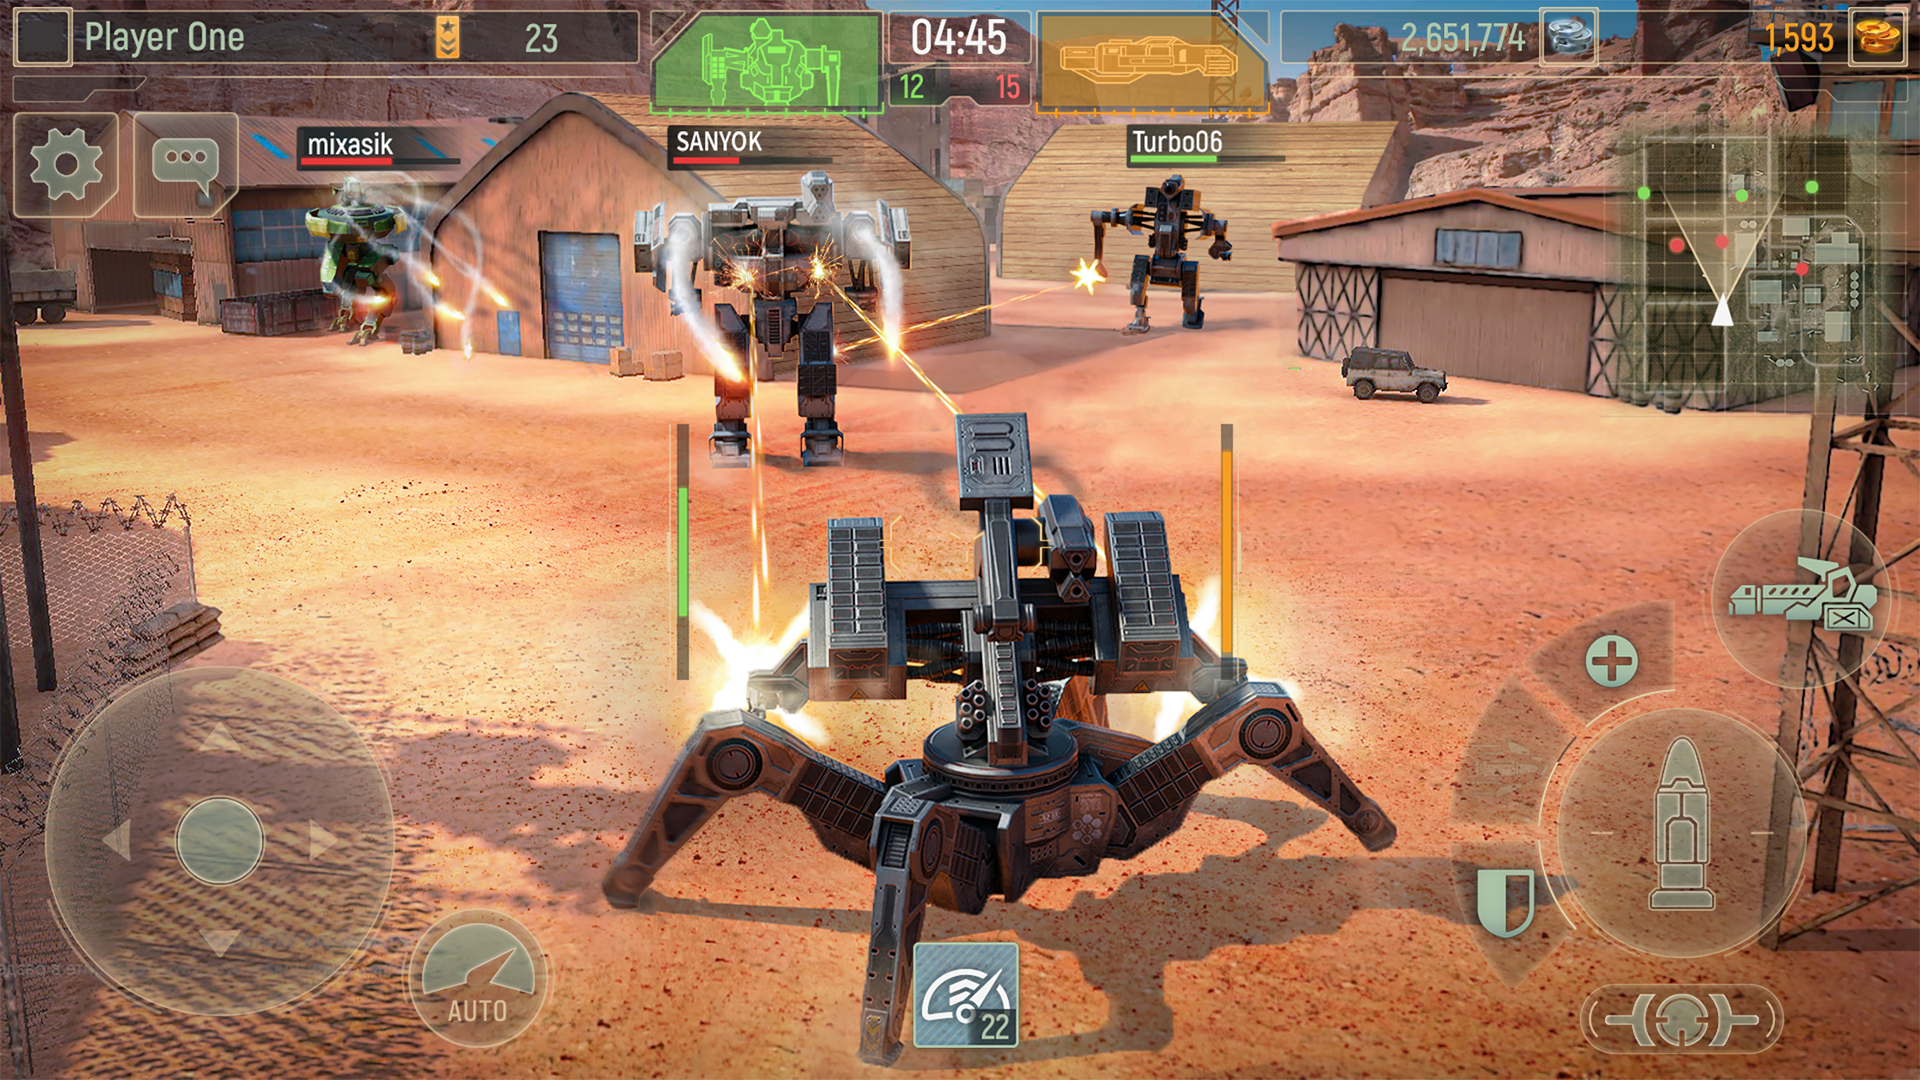 Screenshot 1 of WWR: Krieg Roboter Spiele 3D 3.25.11